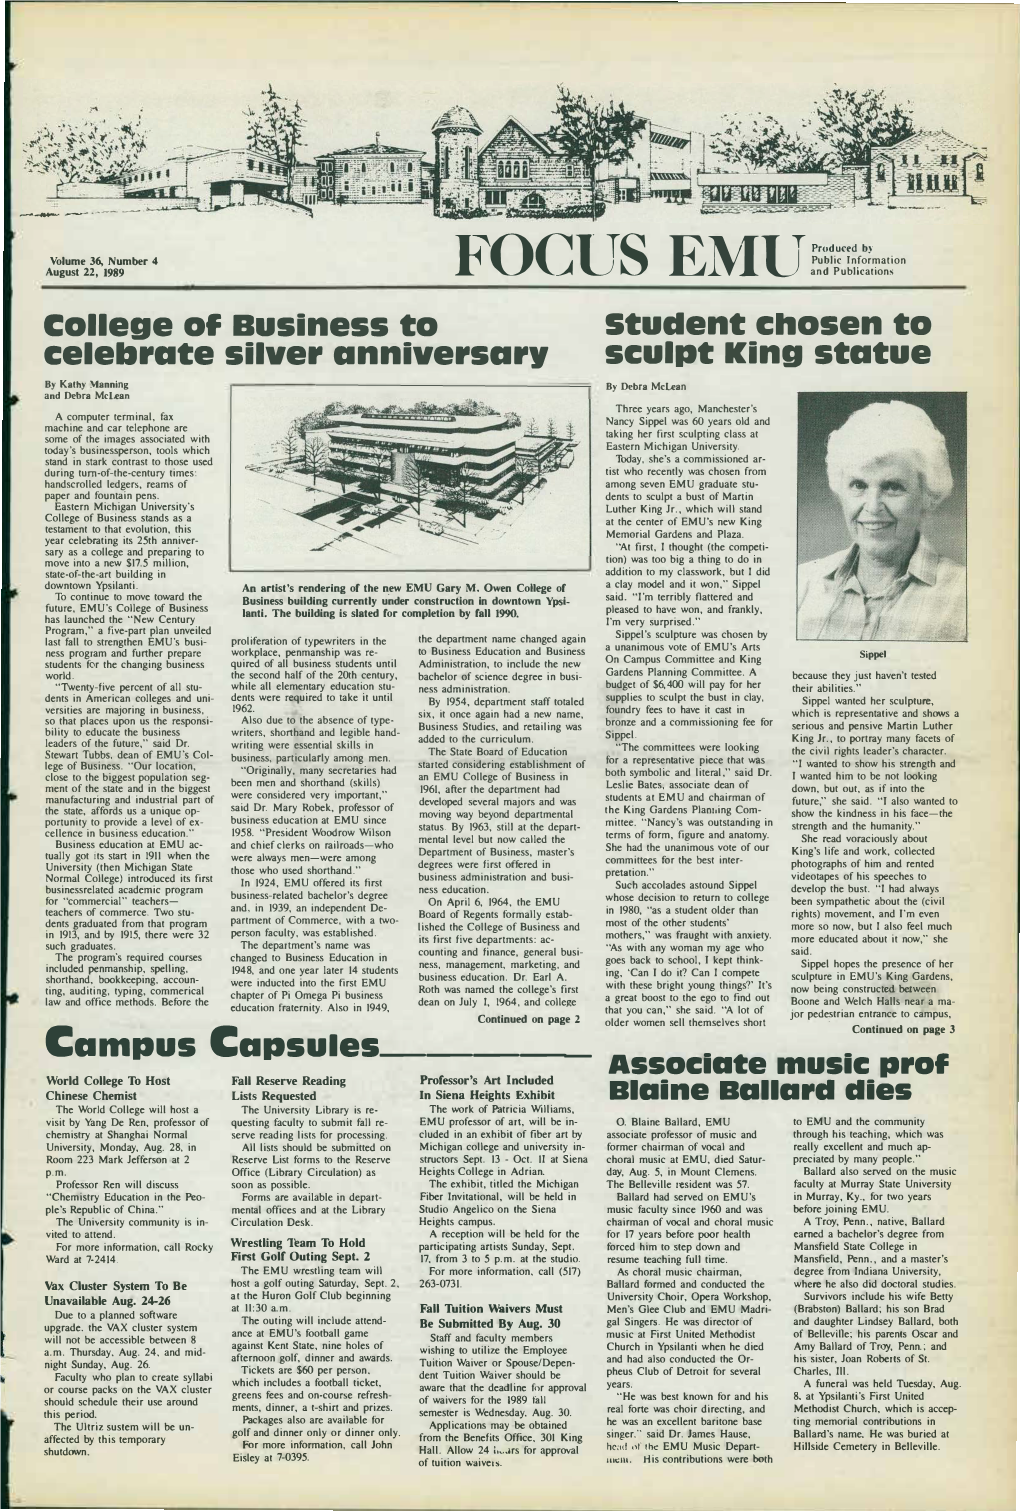 Focus EMU, August 22, 1989